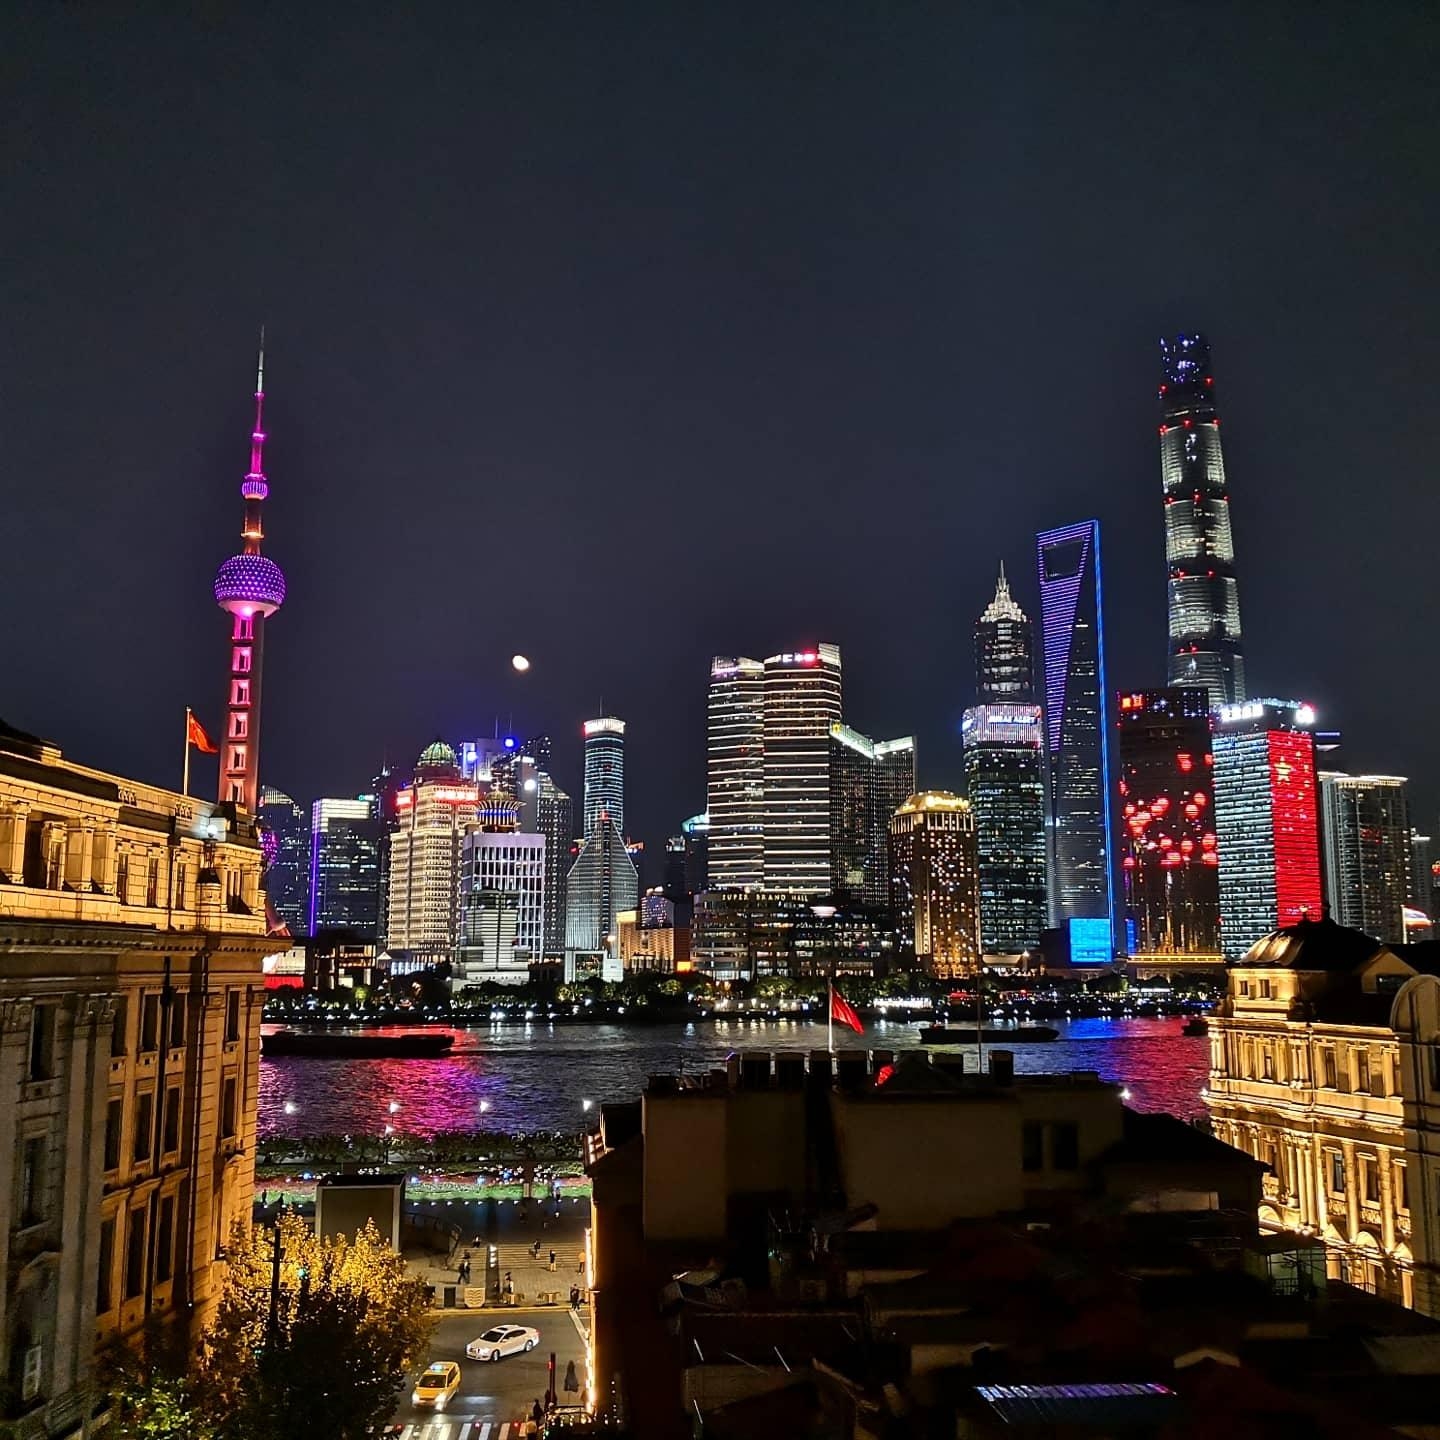 #Shanghai 😍 die Anreise ist zwar etwas länger, aber eine meiner Lieblingsstädte!! #städtetrip #travelchallenge 